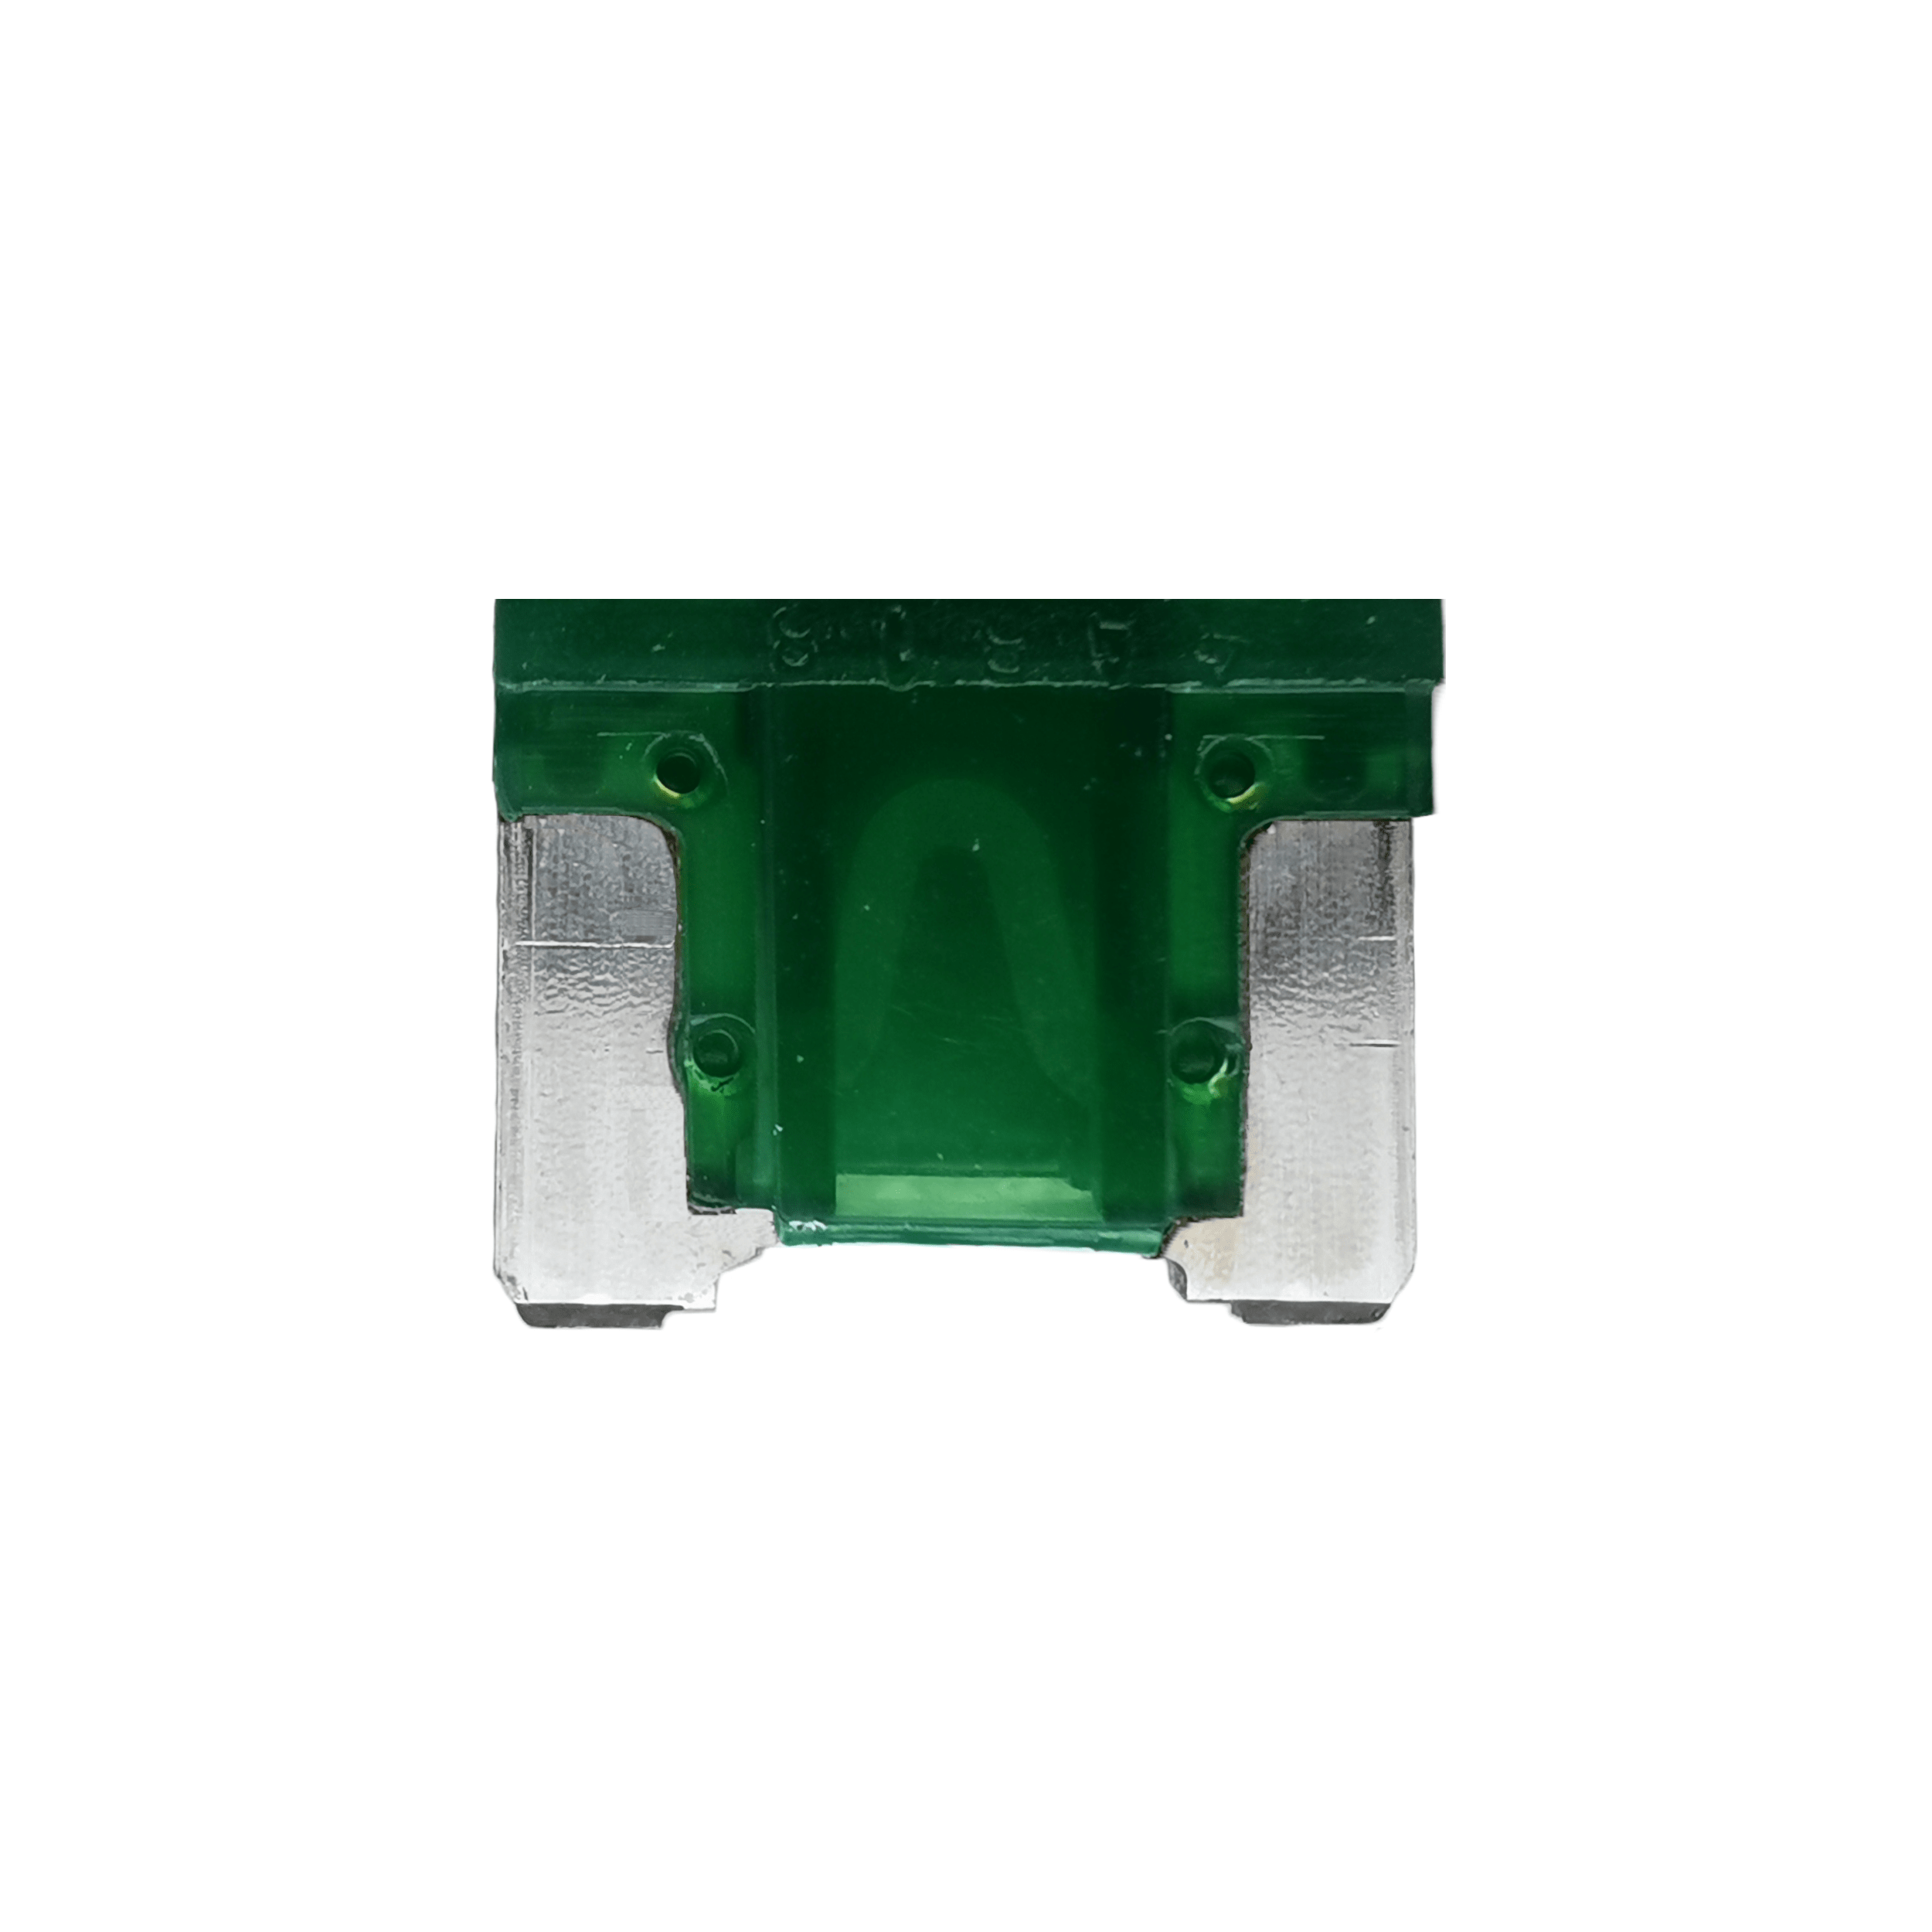 Kfz-Flachstecksicherung Mini LP grün 30A